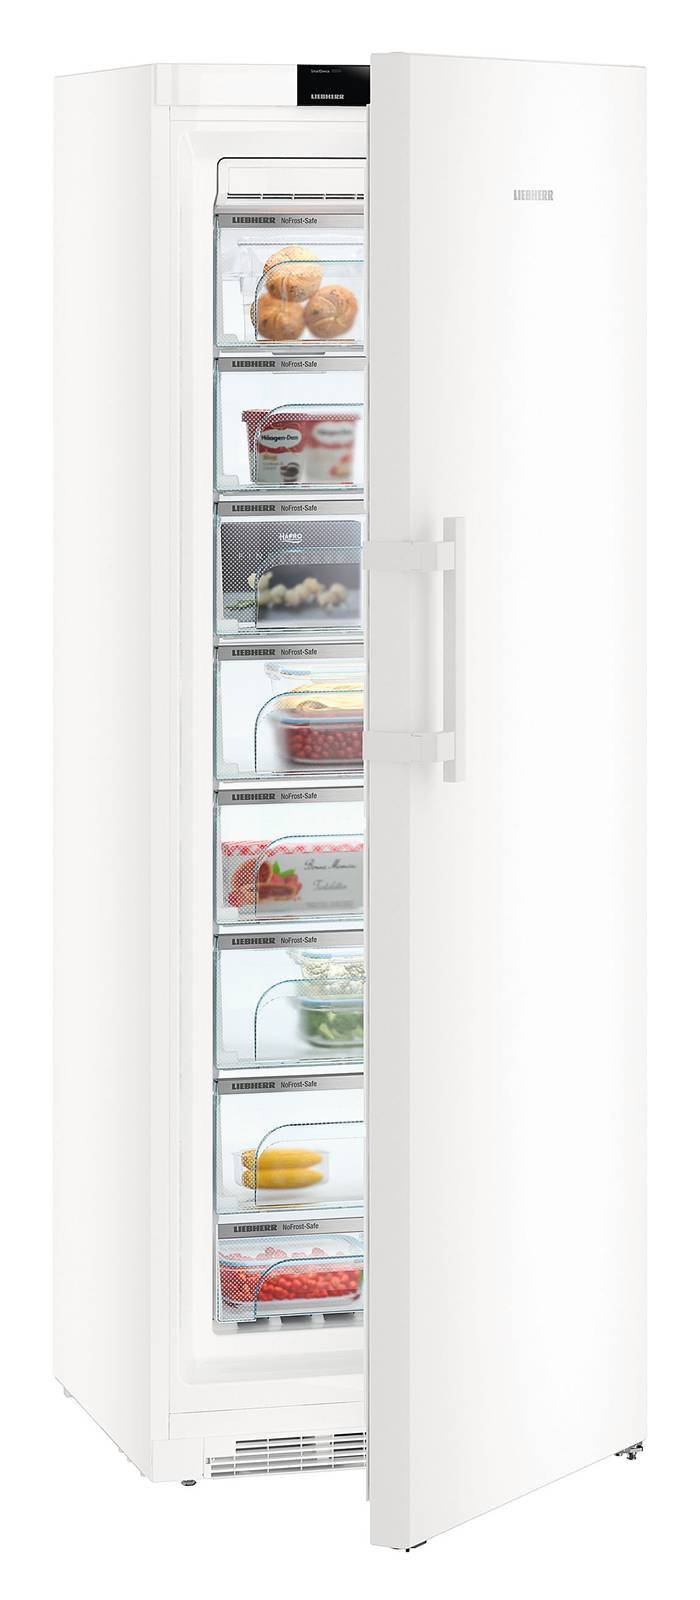 I congelatori verticali sono dotati di scomparti e cassetti?